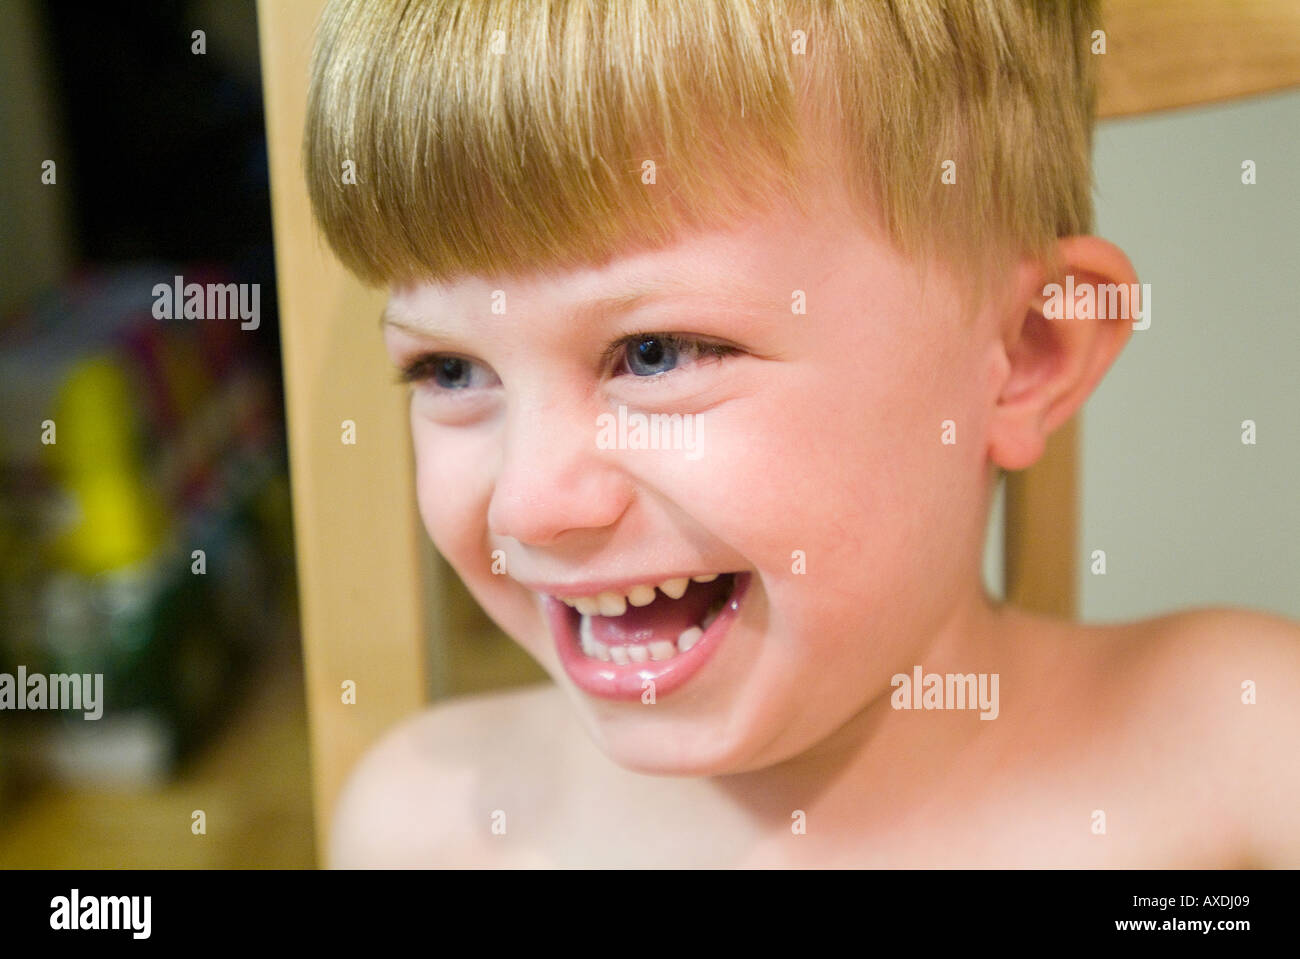 Kleiner Junge lachend mit natürlichen Lächeln und lachen. Kinder lachen. Stockfoto